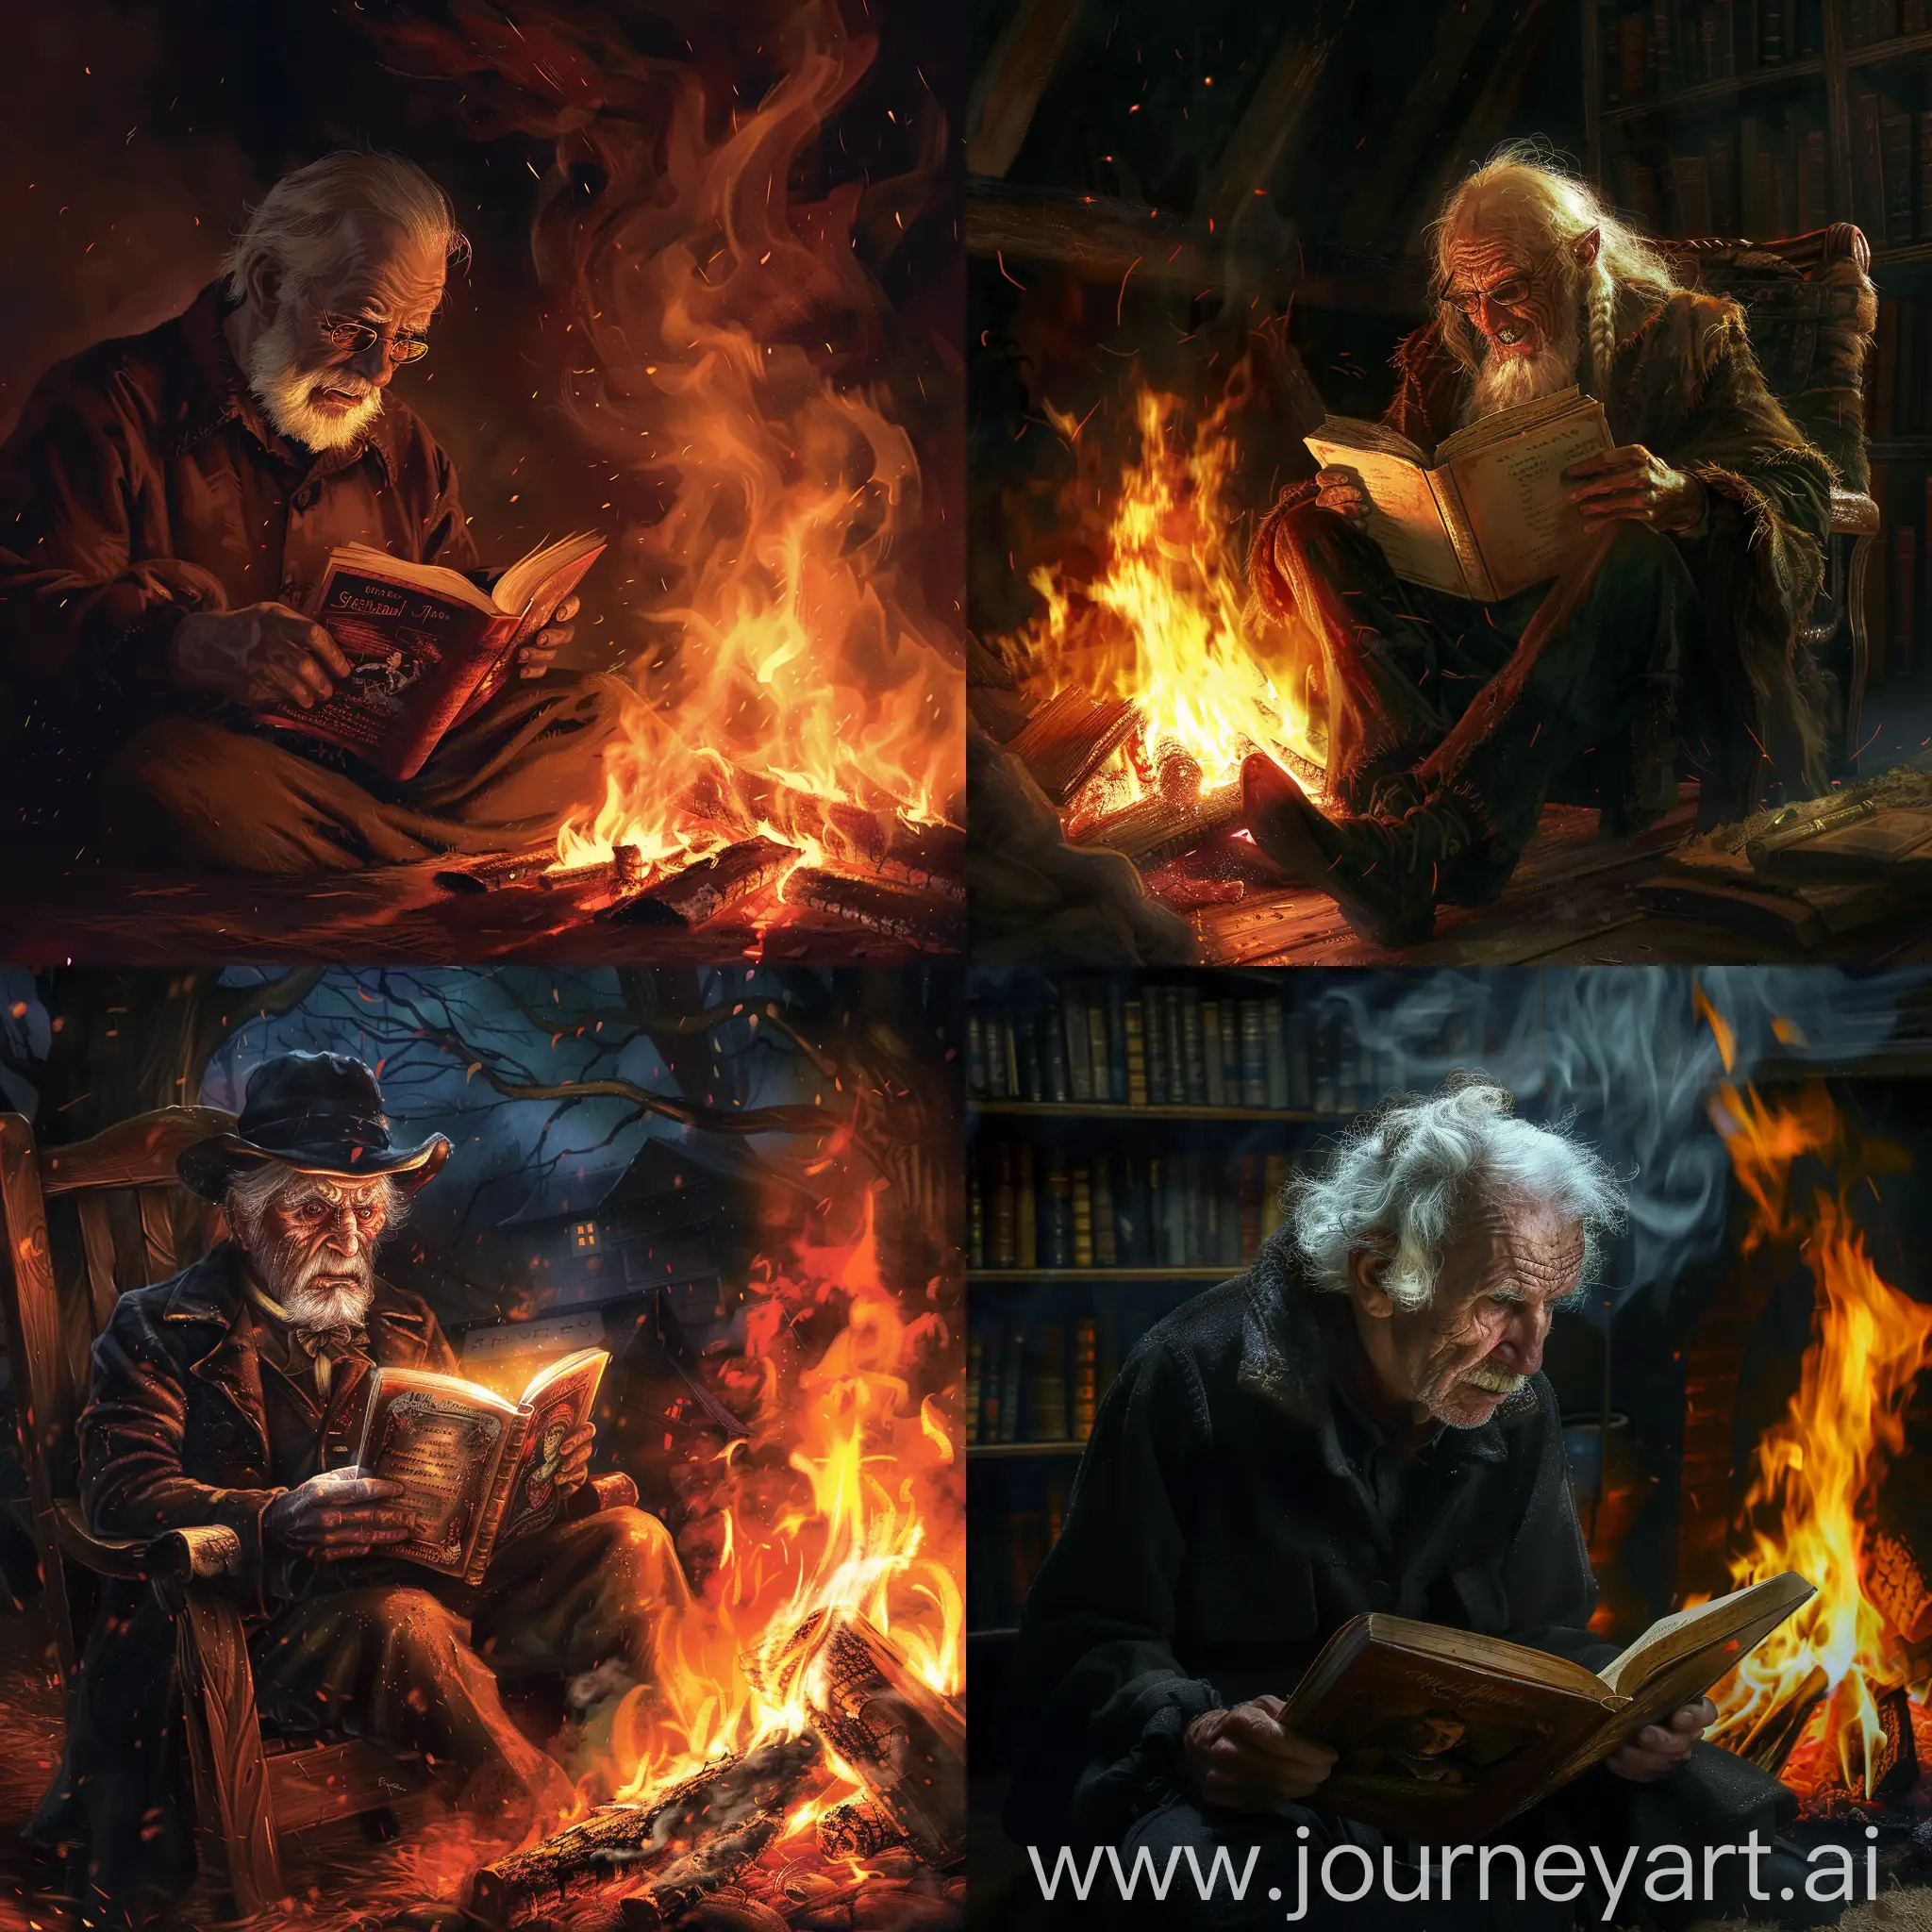 Elderly-Man-Reading-Spooky-Tale-by-Fireplace